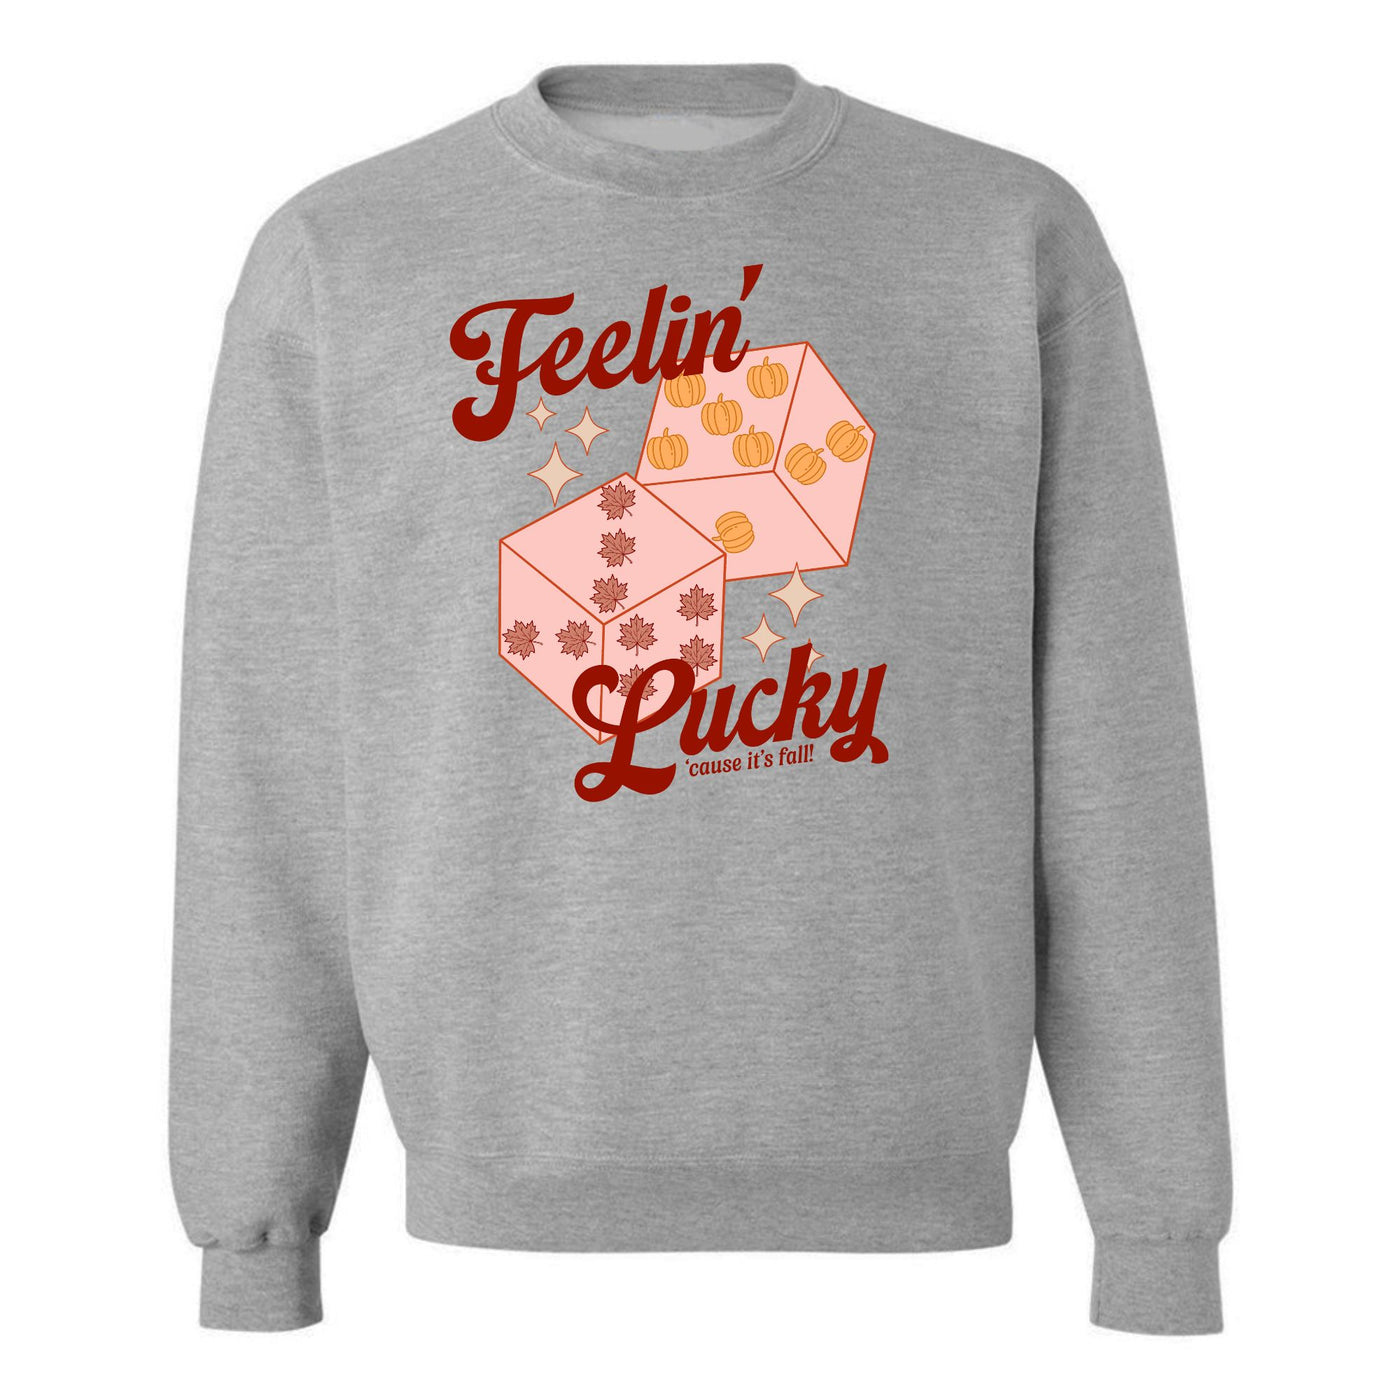 'Feelin' Lucky' Crewneck Sweatshirt